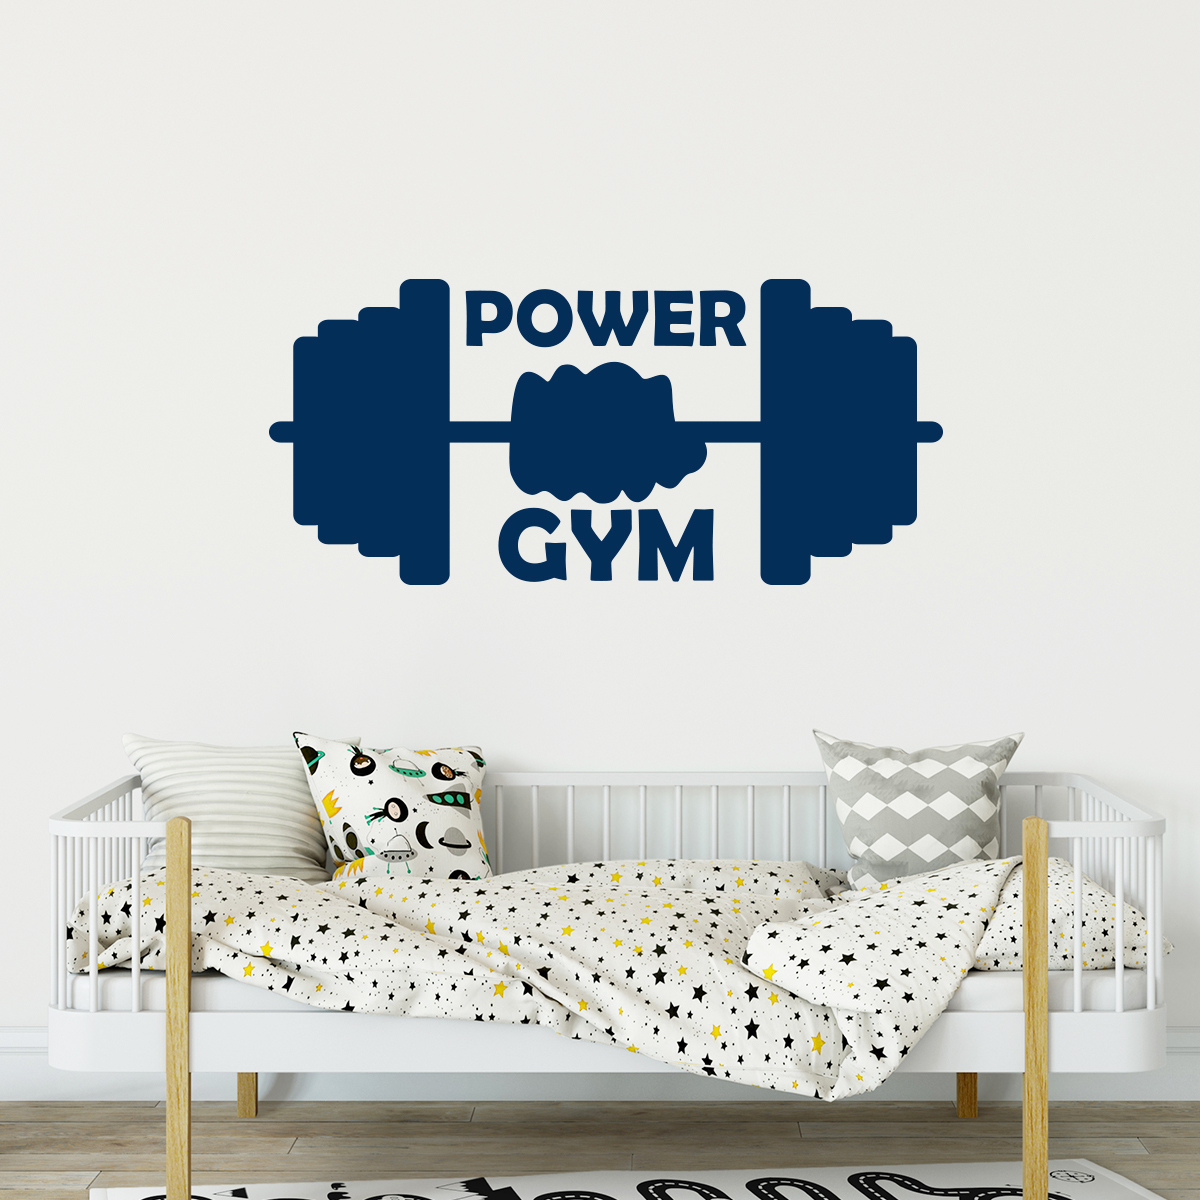 Wall sticker sport power gym